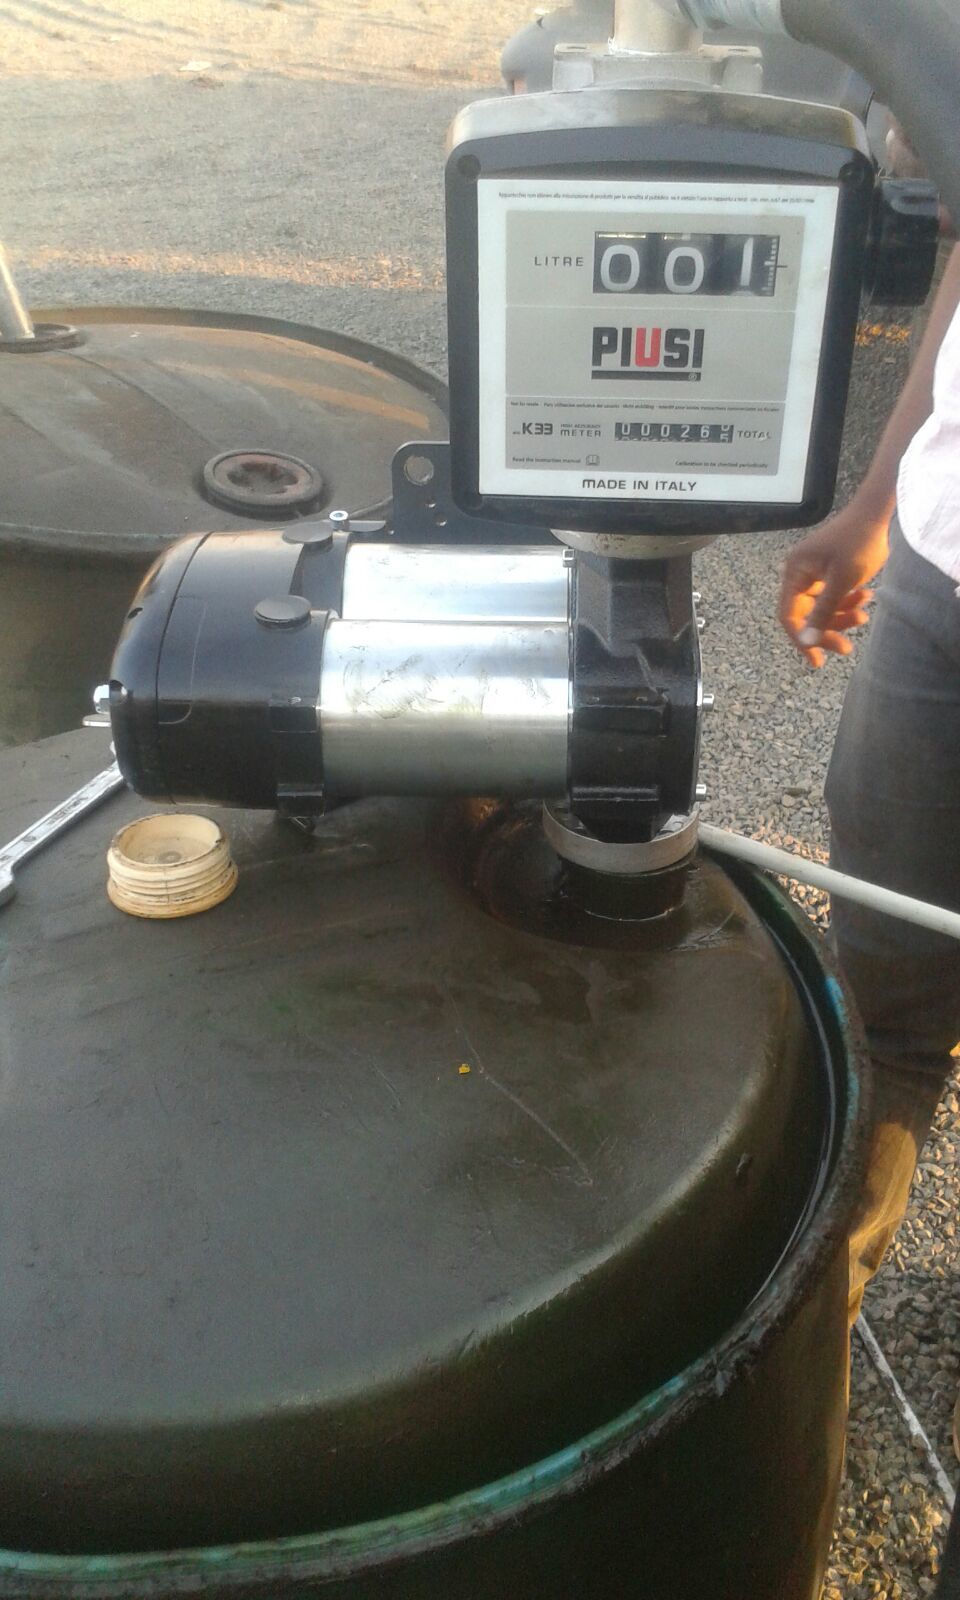 Piusi Bi-pump with Flow Meter